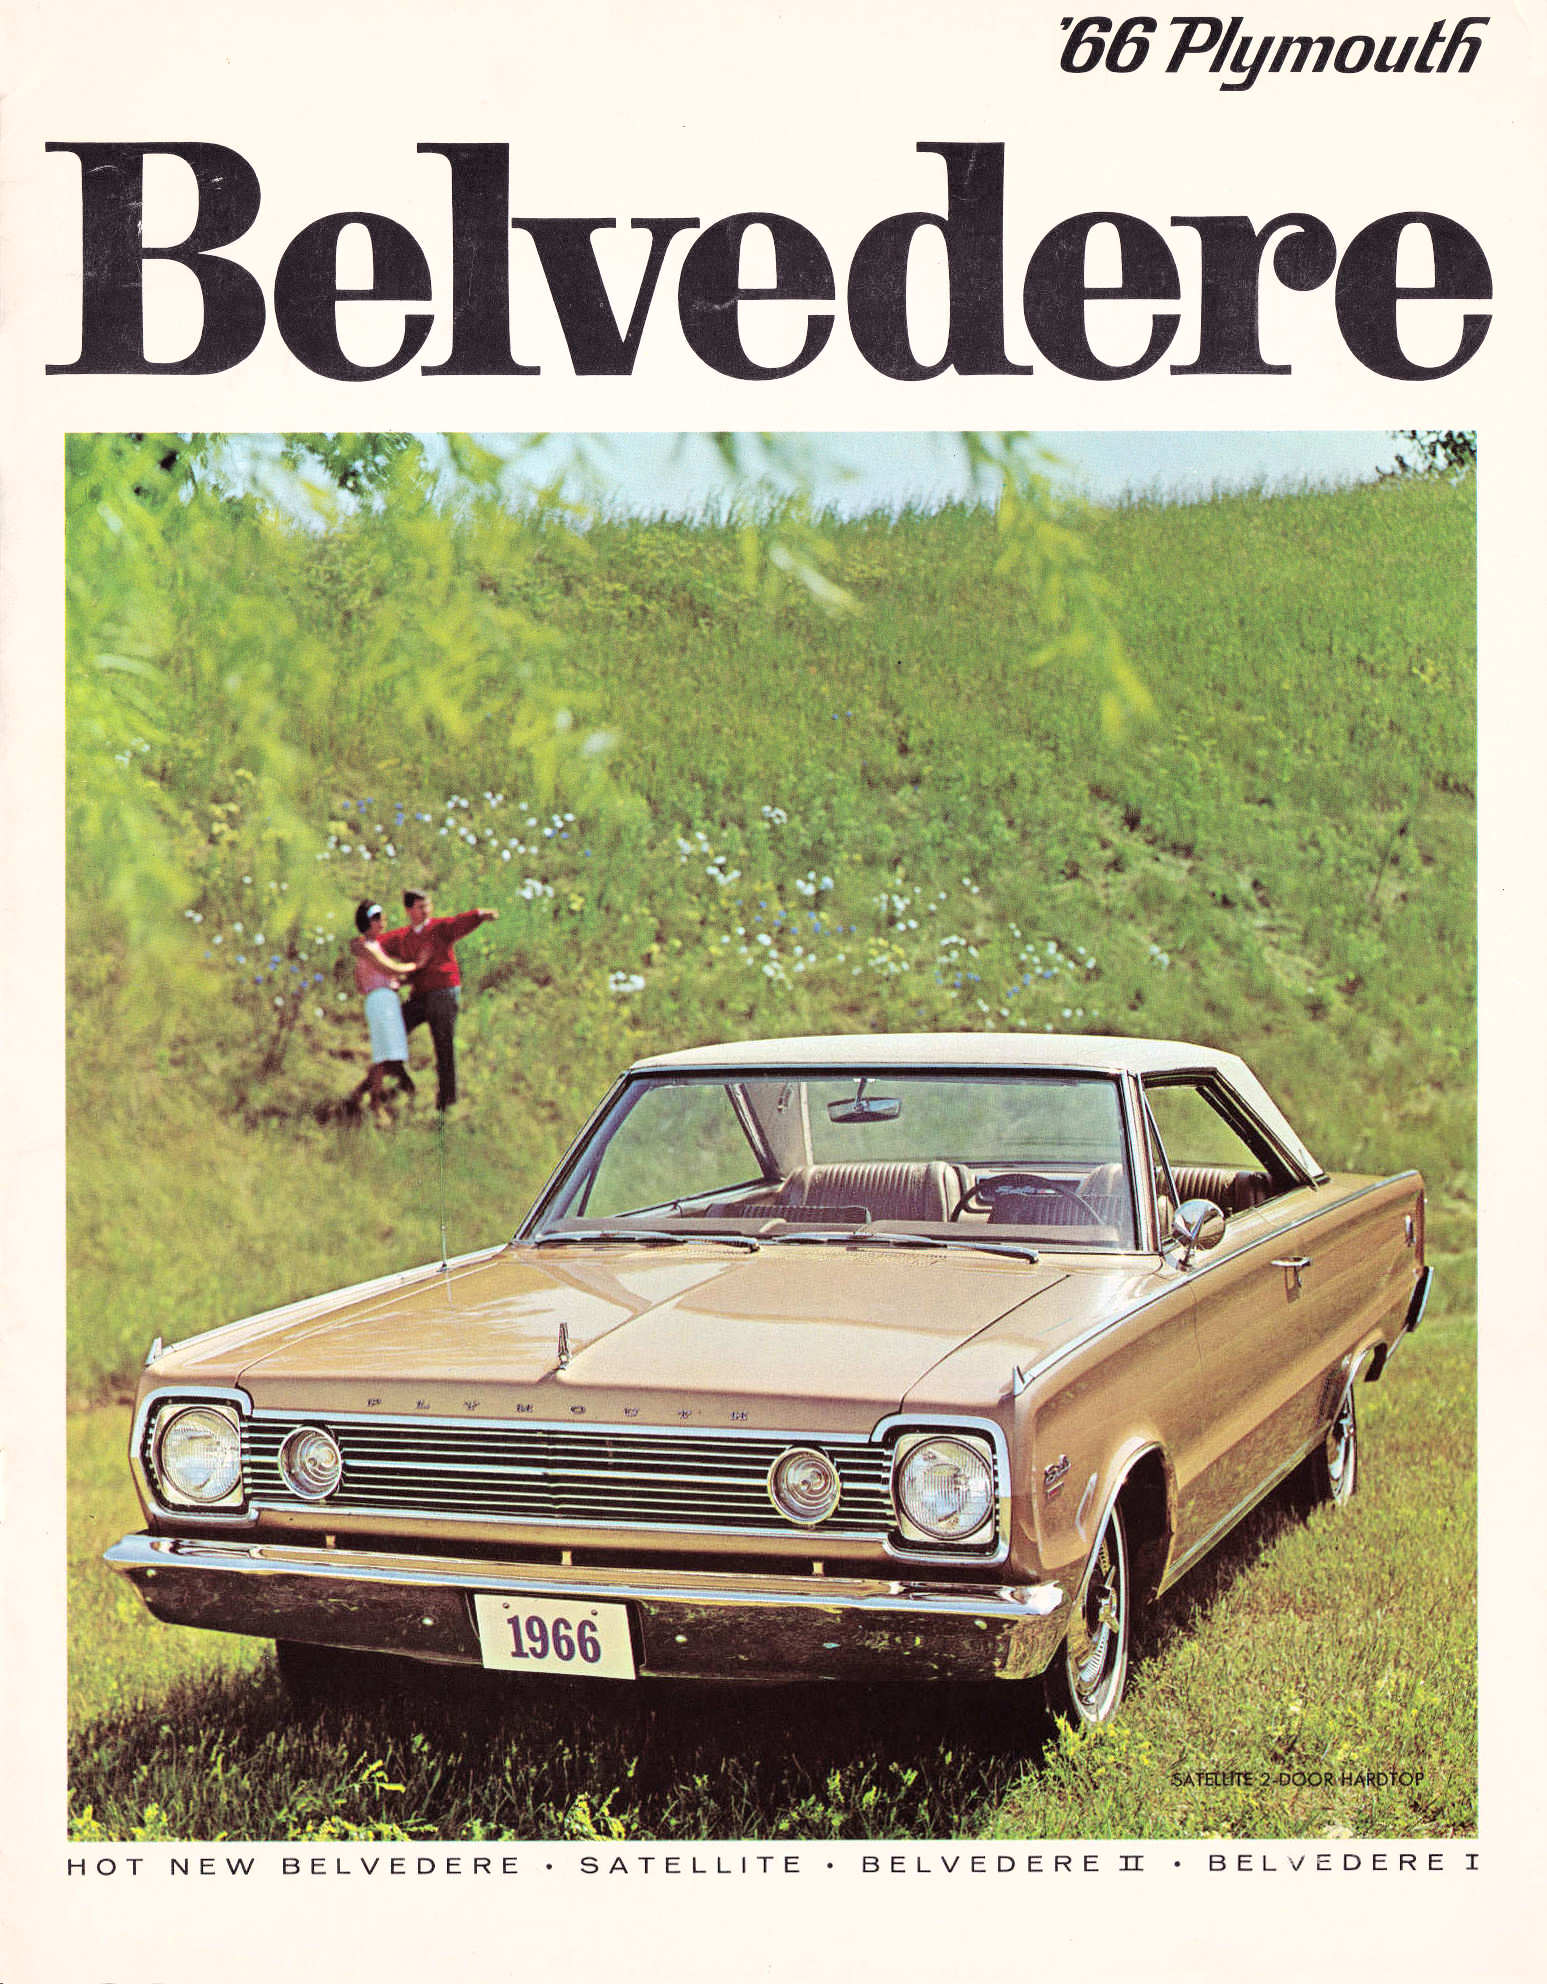 USA Prospekt brochure 1966 Plymouth Belvedere 